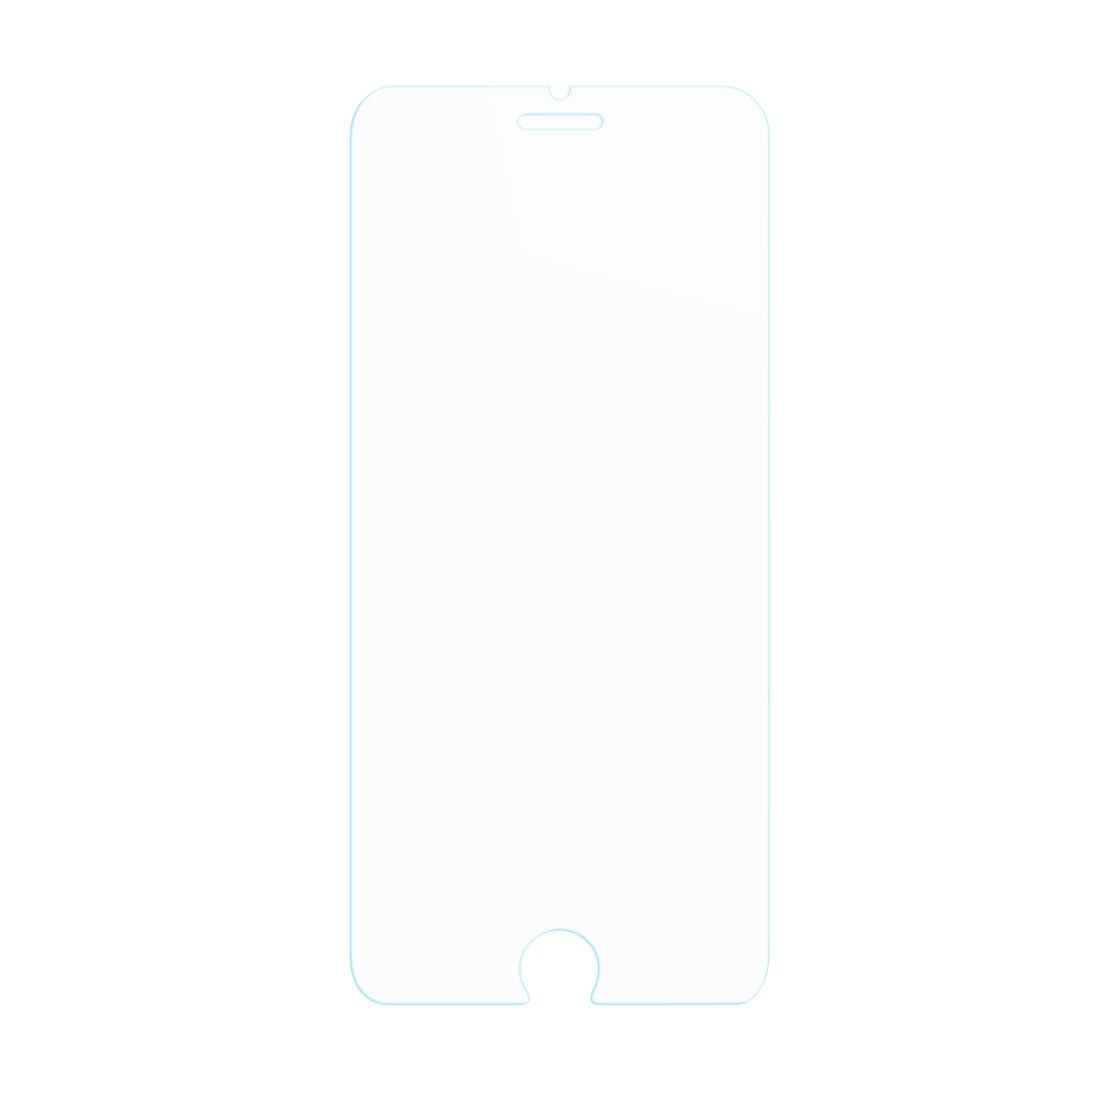 Baseus skjermbeskyttelse av herdet glass iPhone 8 / 7